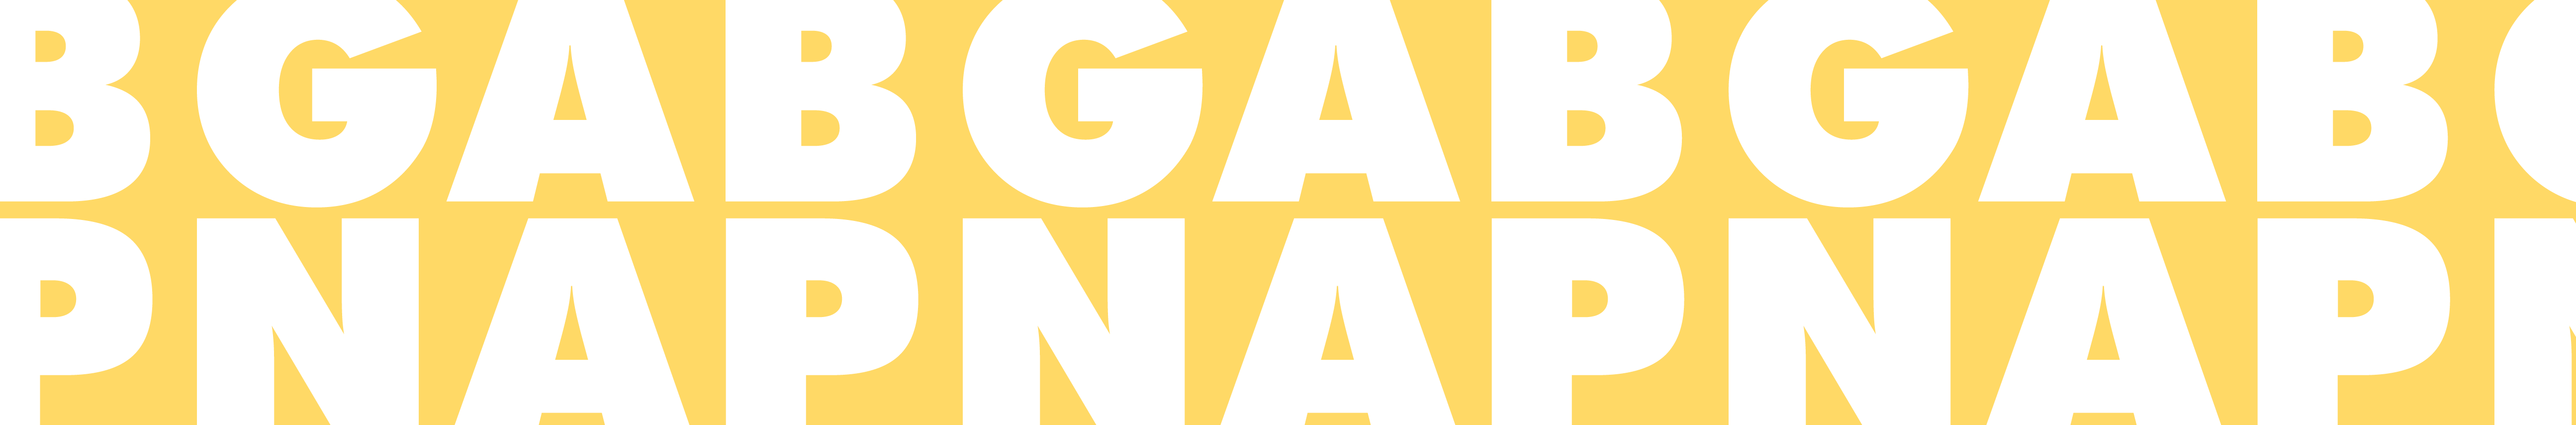 Gabrielle Napolitano's profile banner